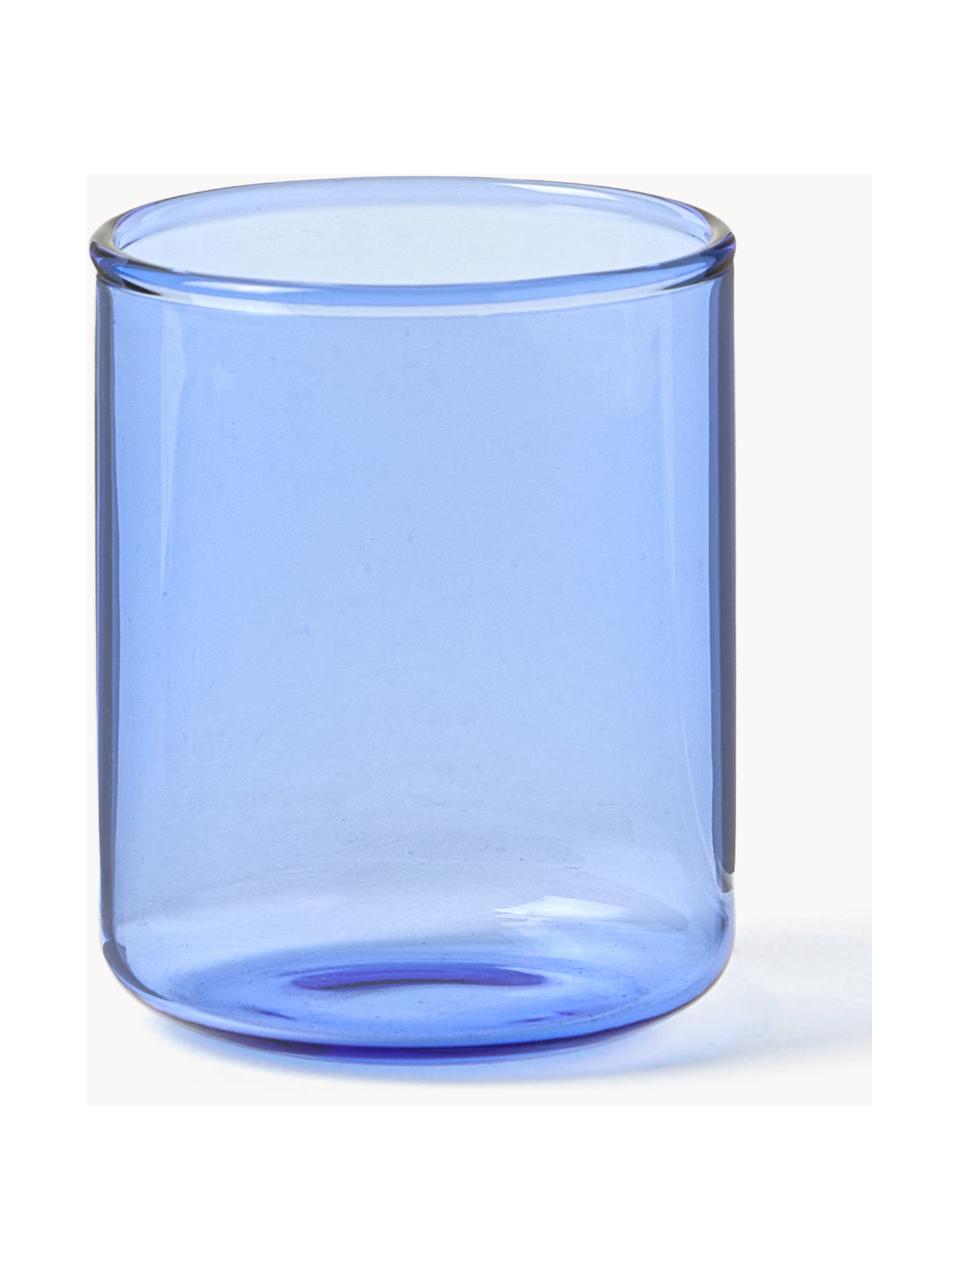 Borrelglaasjes Torino uit borosilicaatglas, 2 stuks, Borosilicaatglas

Ontdek de veelzijdigheid van borosilicaatglas voor je huis! Borosilicaatglas is een hoogwaardig, betrouwbaar en robuust materiaal. Het wordt gekenmerkt door zijn uitzonderlijke hittebestendigheid en is daarom ideaal voor je hete thee of koffie. Vergeleken met conventioneel glas is borosilicaatglas beter bestand tegen breken en barsten, waardoor het een veilige metgezel is in je huis., Blauw, transparant, Ø 4 x H 5 cm, 60 ml